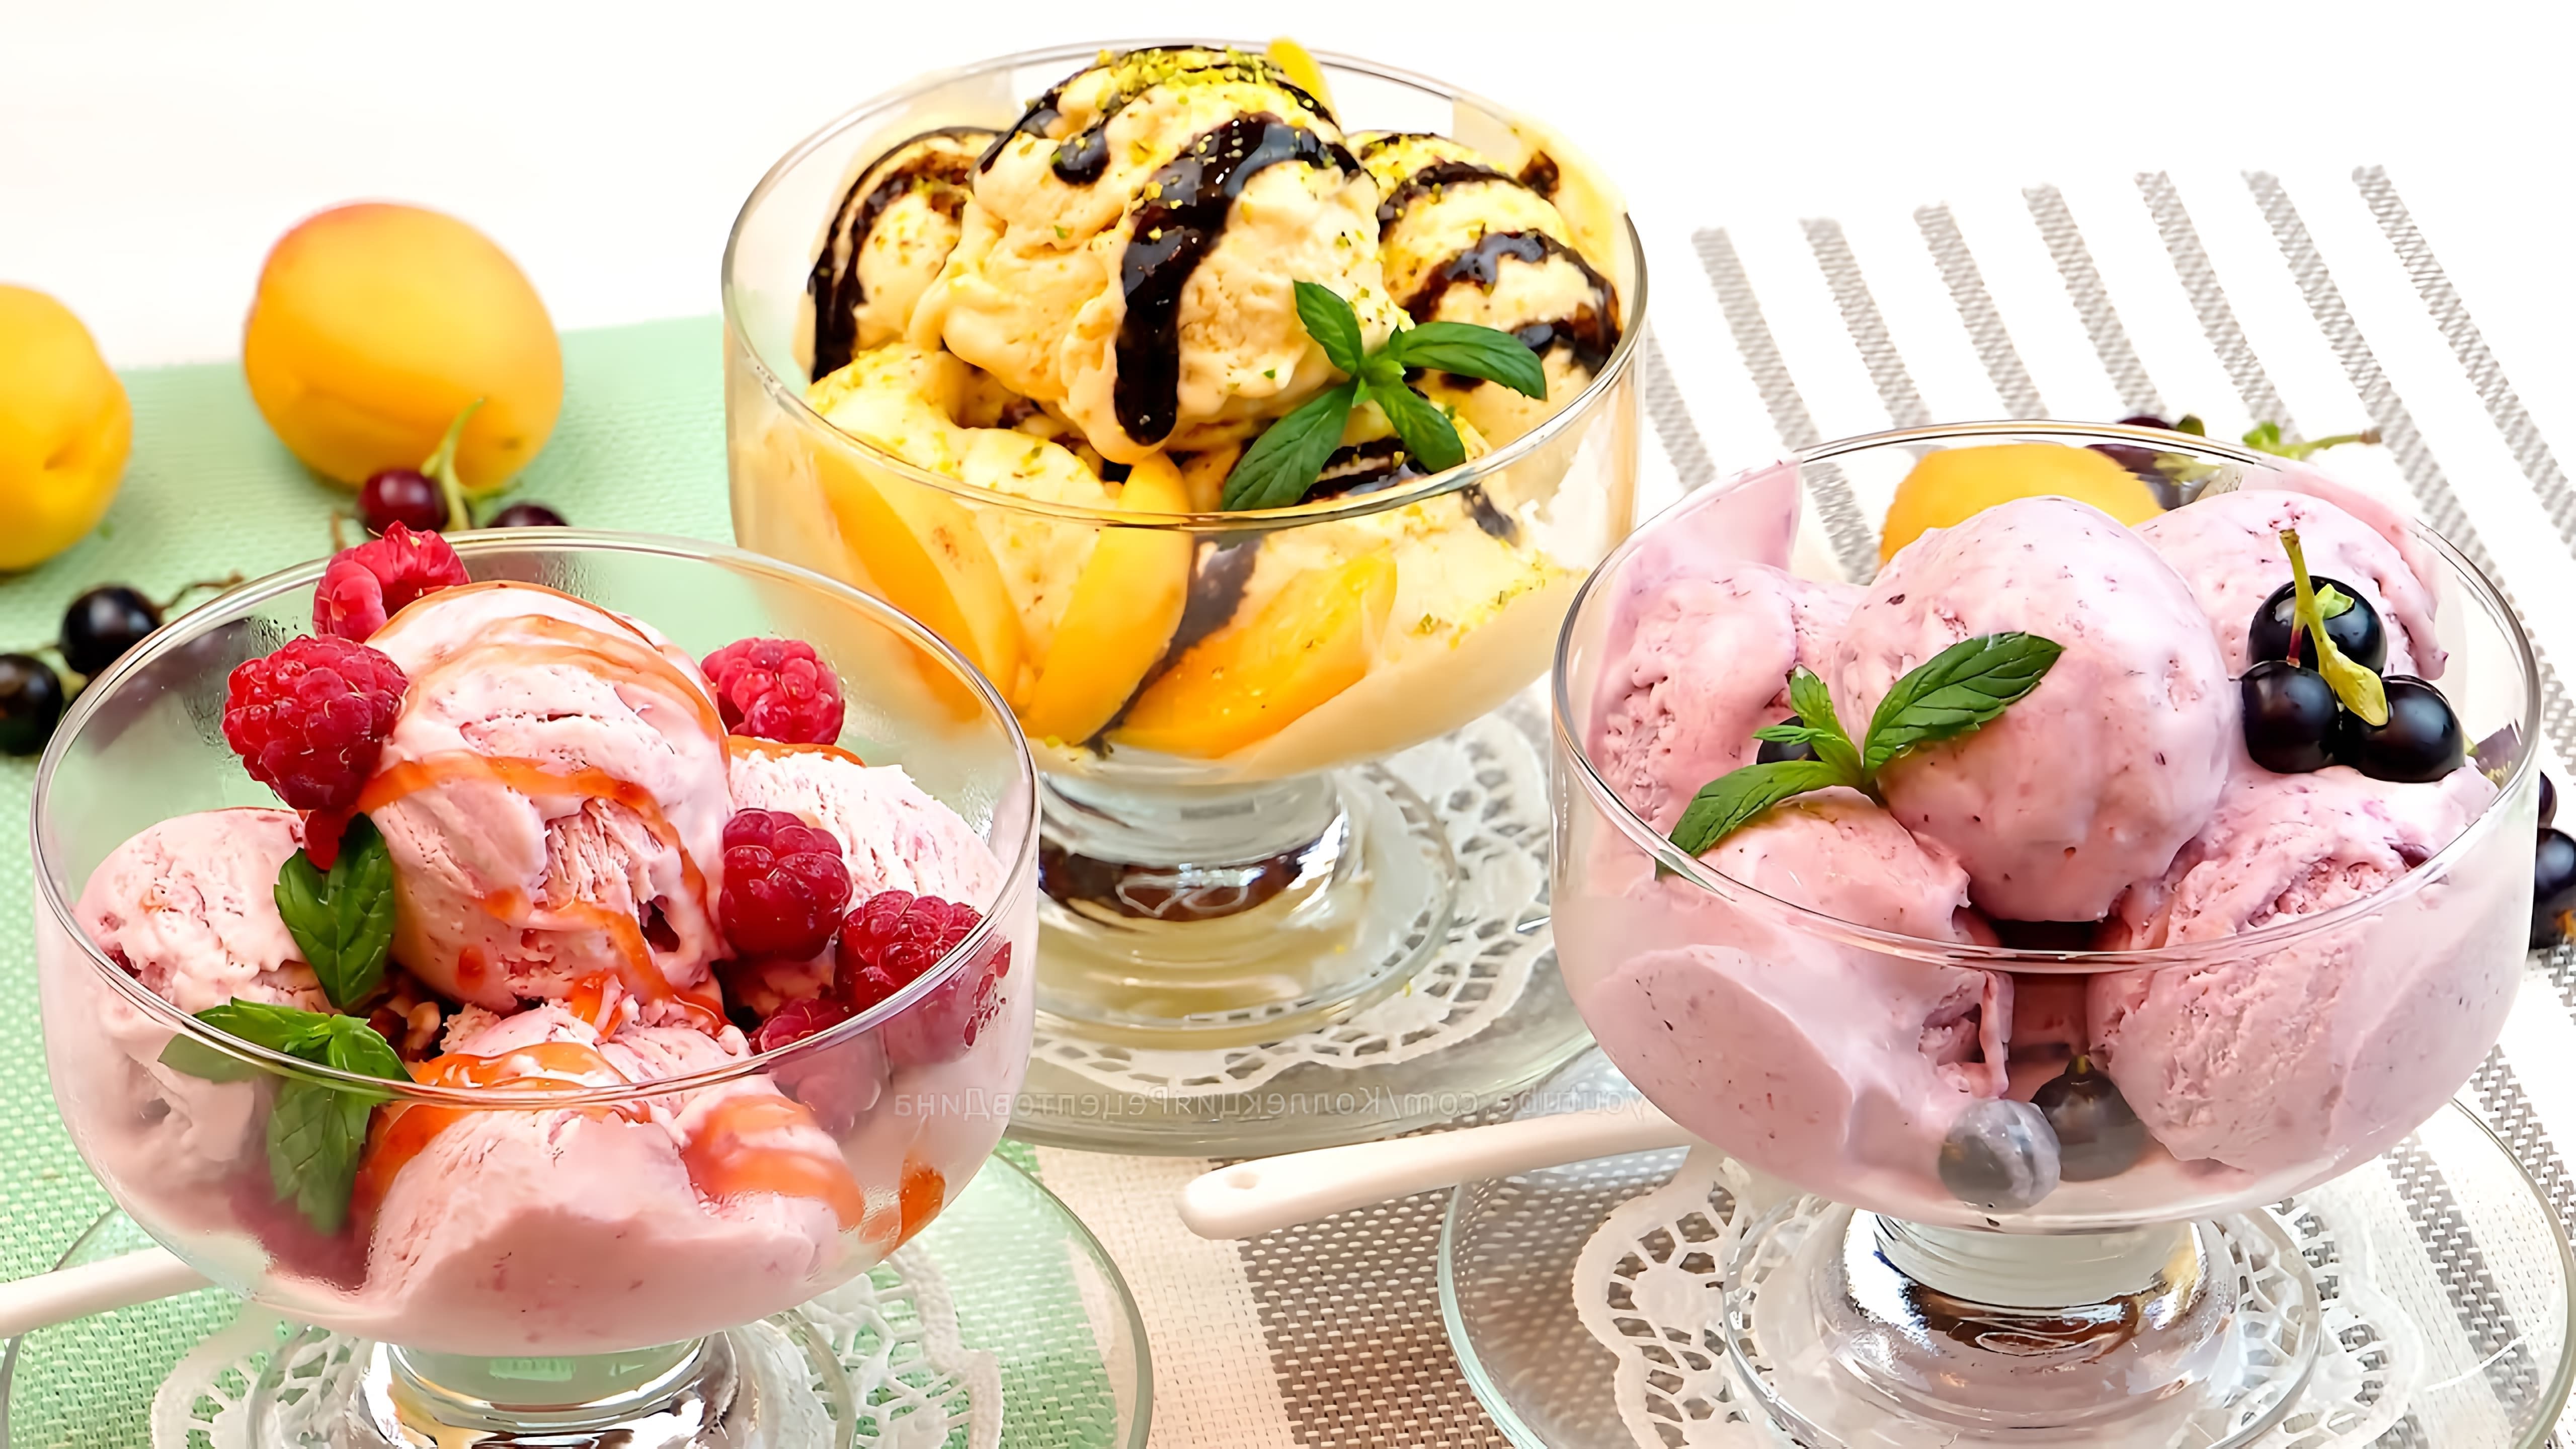 В этом видео Дина показывает, как приготовить три вида фруктово-сливочного мороженого: малиновое, абрикосовое и из черной смородины